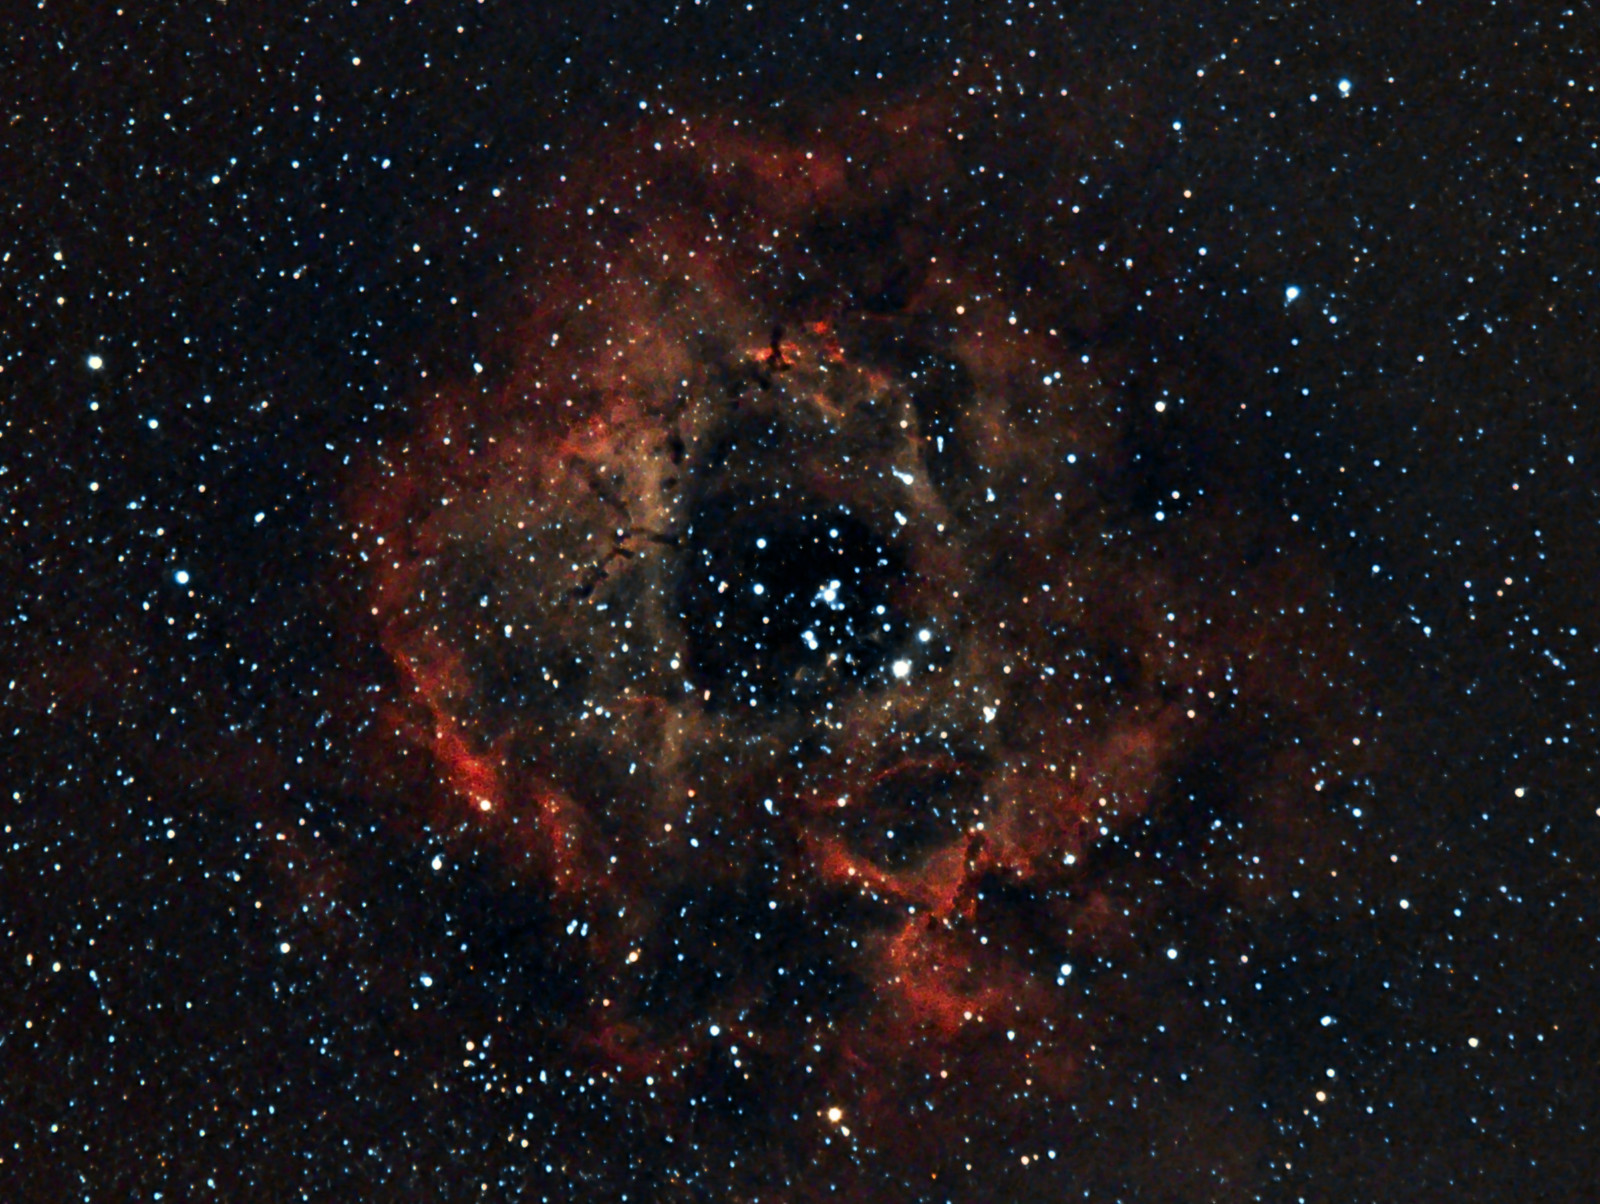 ช่องว่าง, ดาว, กลุ่มก๊าซ, ลายรูปดอกกุหลาบ, ตัวยูนิคอน, ในกลุ่มดาว, ทางออก, NGC 2237